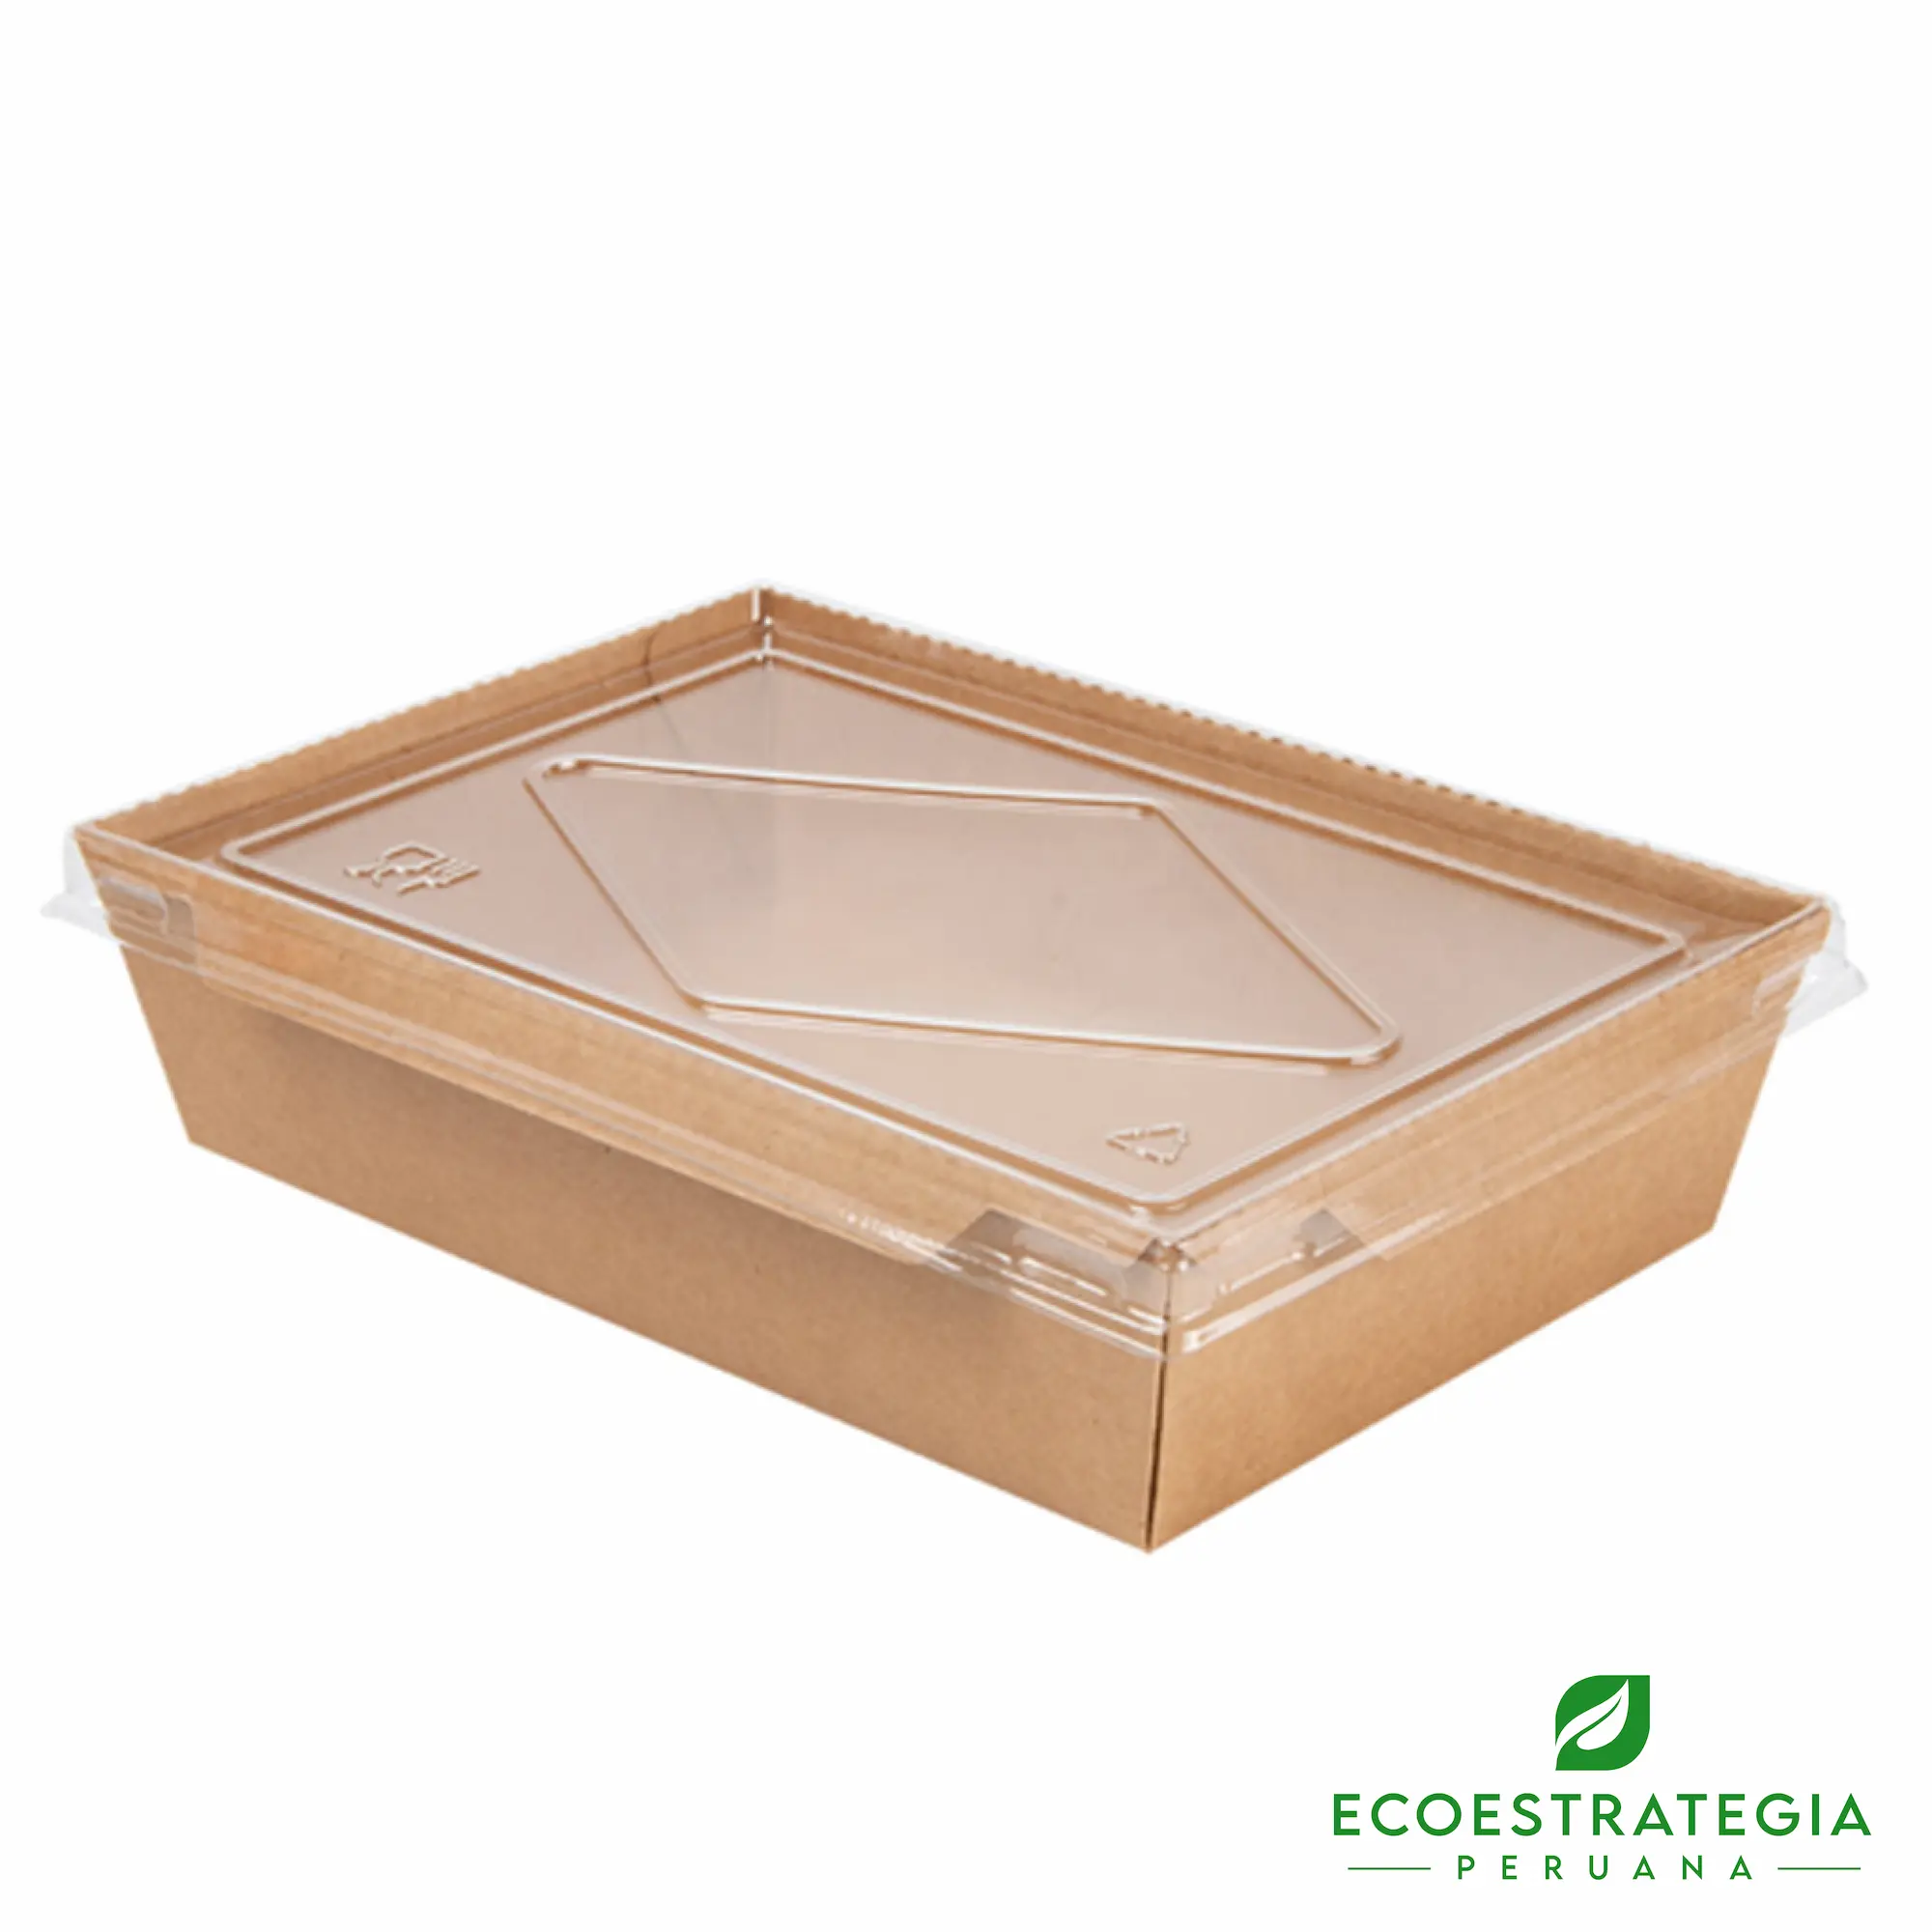 Esta bandeja biodegradable está hecho de cartón Kraft y tiene una capacidad de 2100ml. Envases descartables con gramaje ideal, cotiza tus tapers ecológicos.